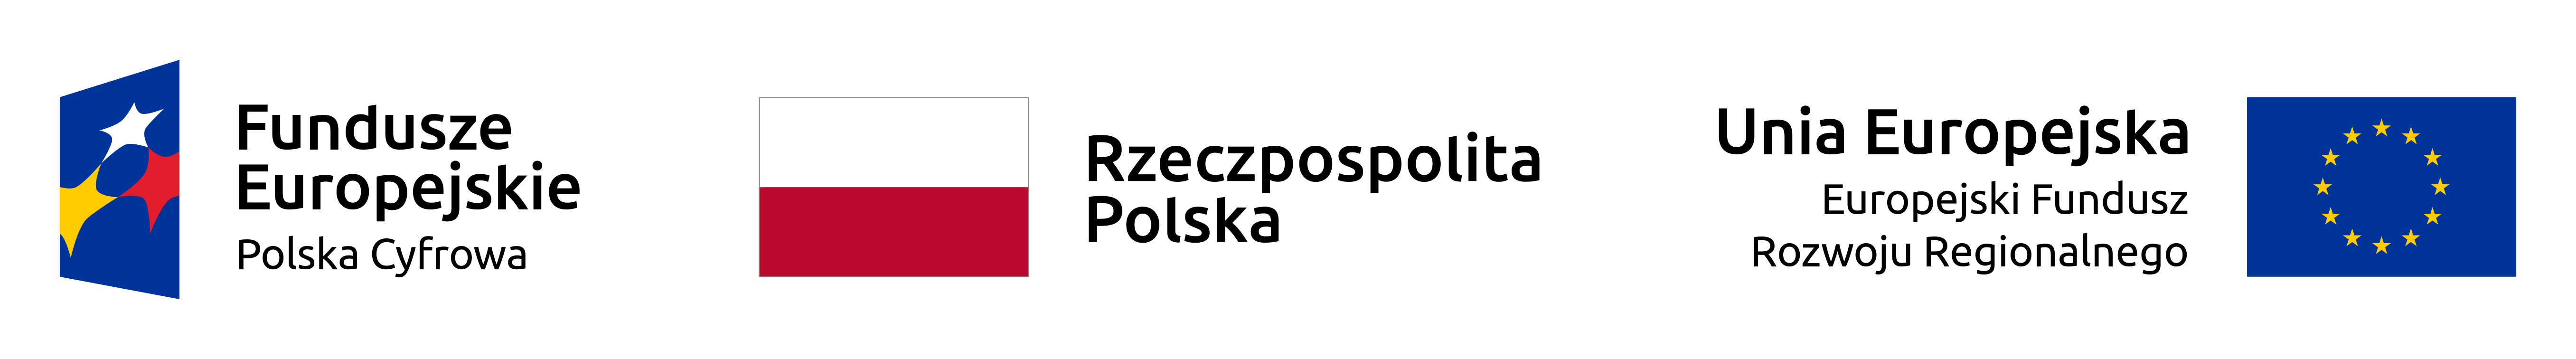 logo EU, flaga Polski